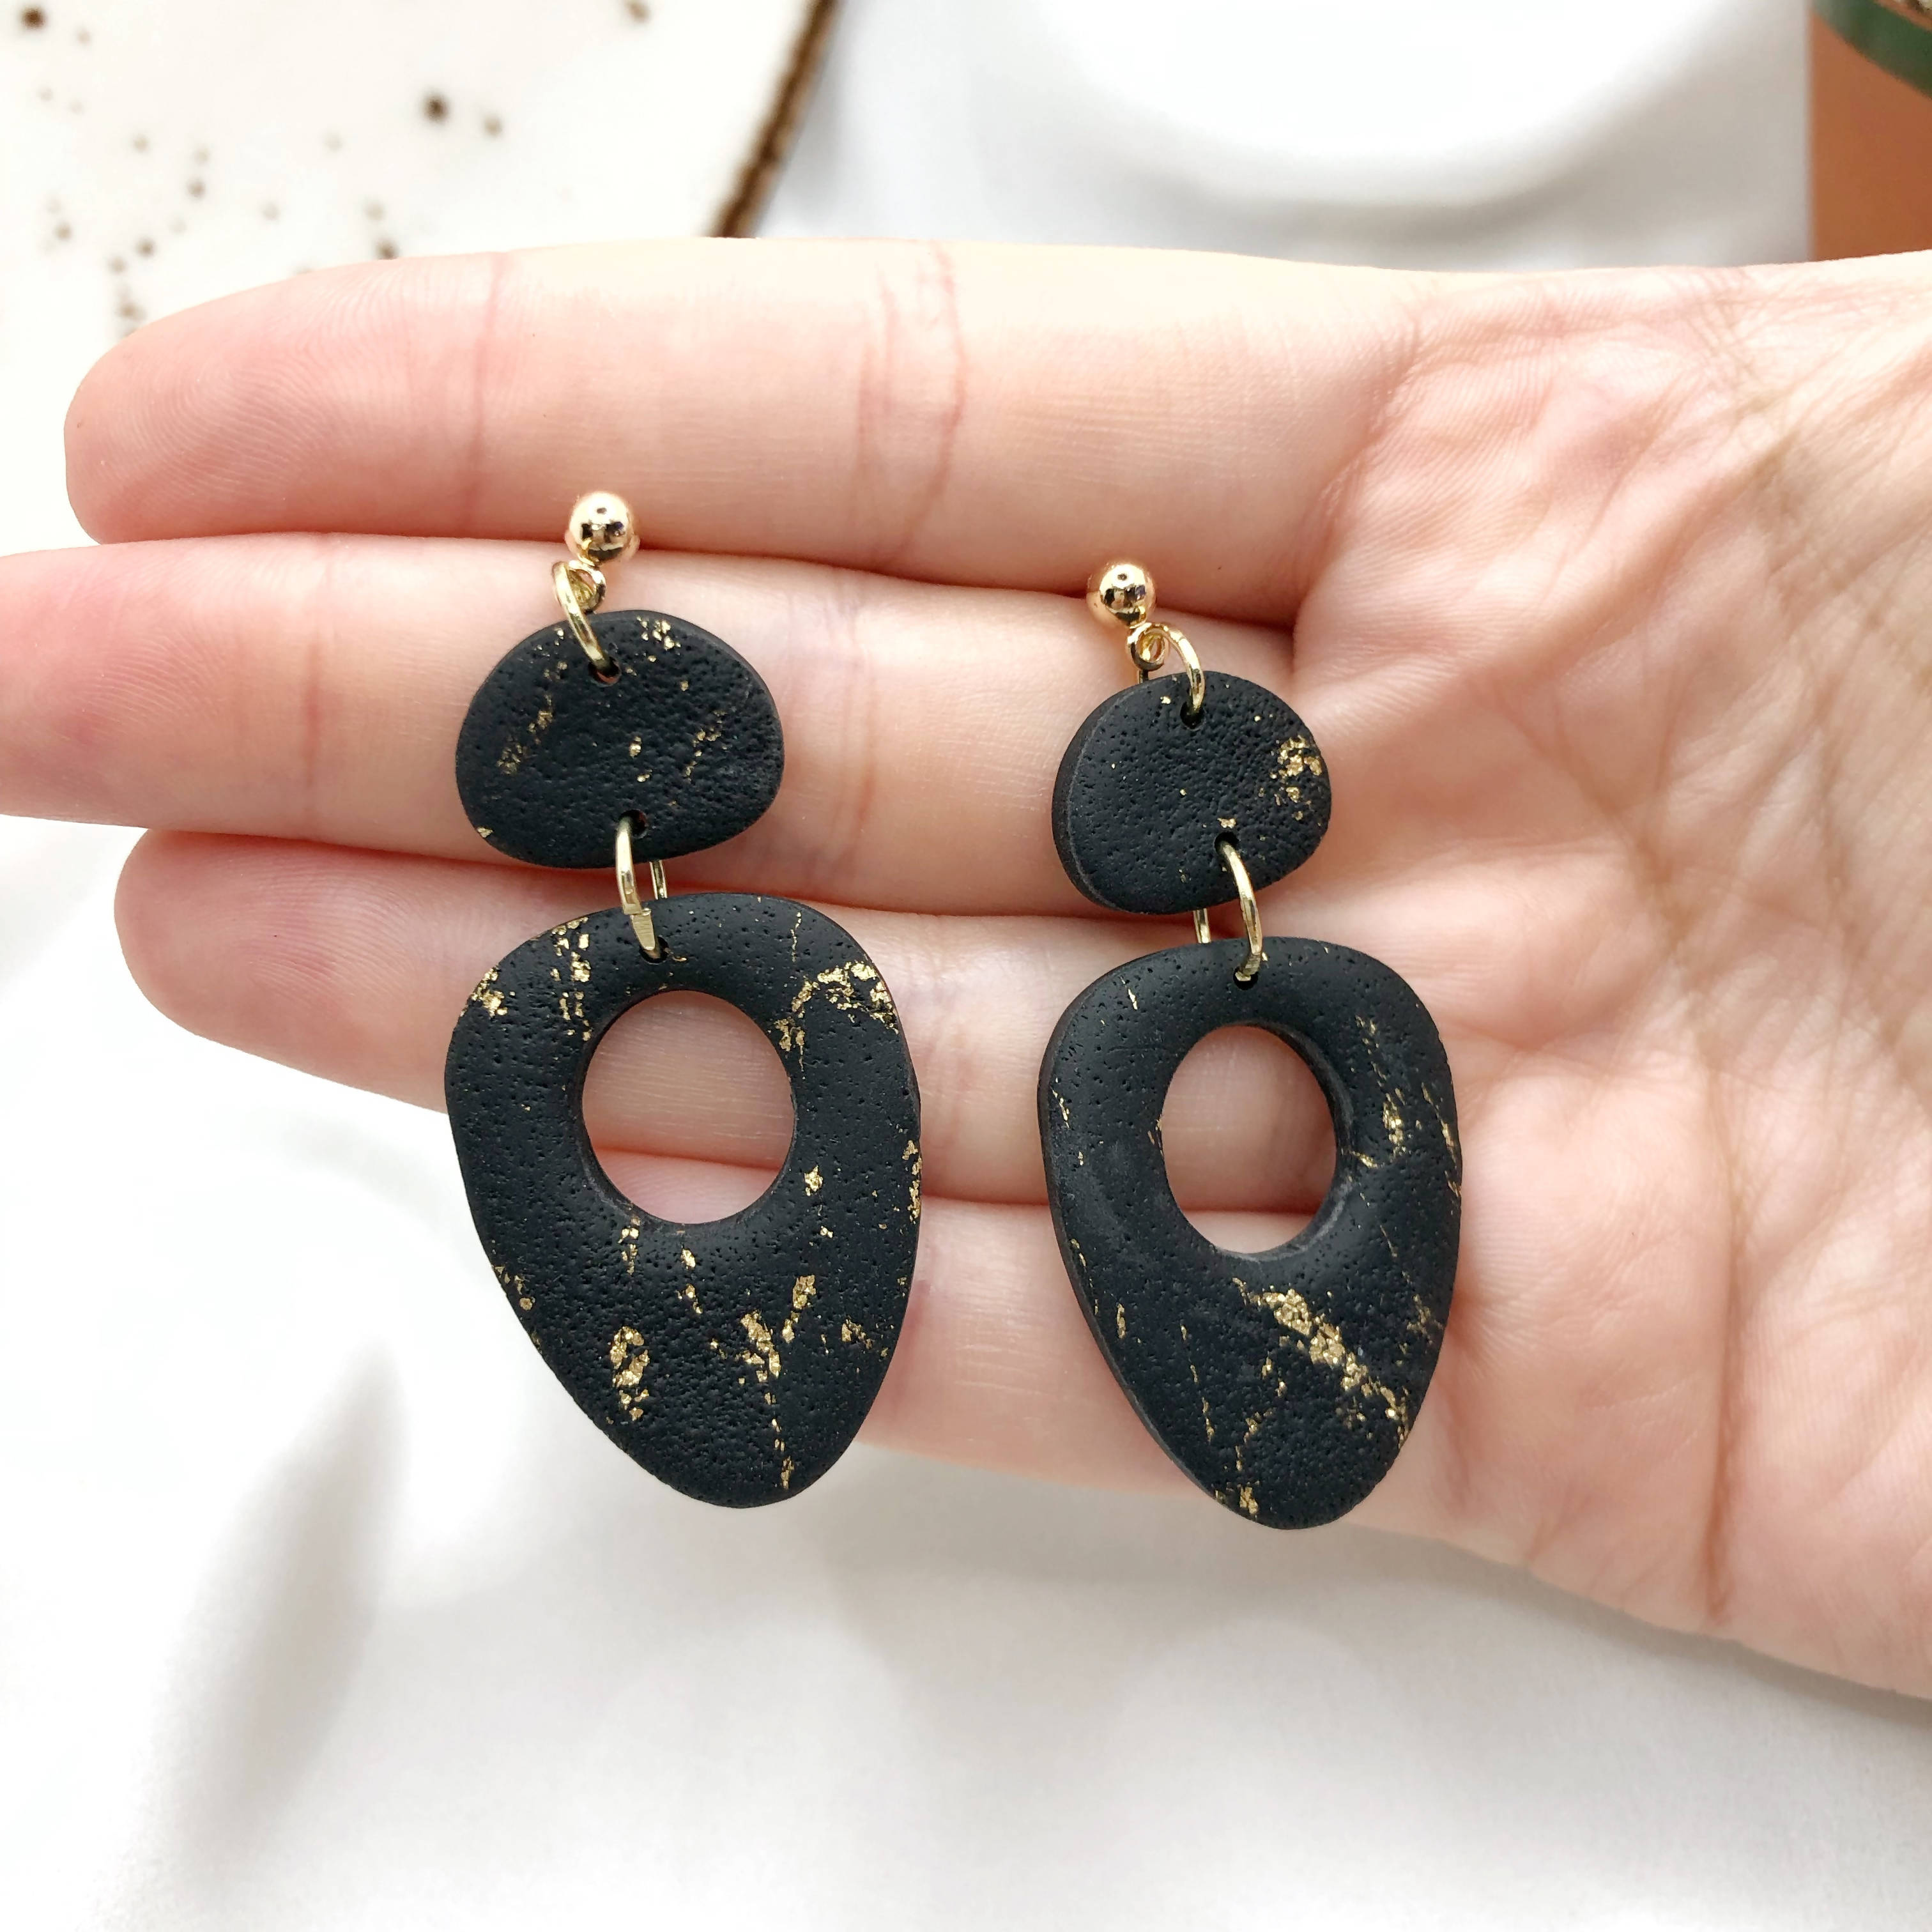 Black with Gold Handmade Polymer Clay Earrings - Anti Allergic Earbacks - Wear Sierra